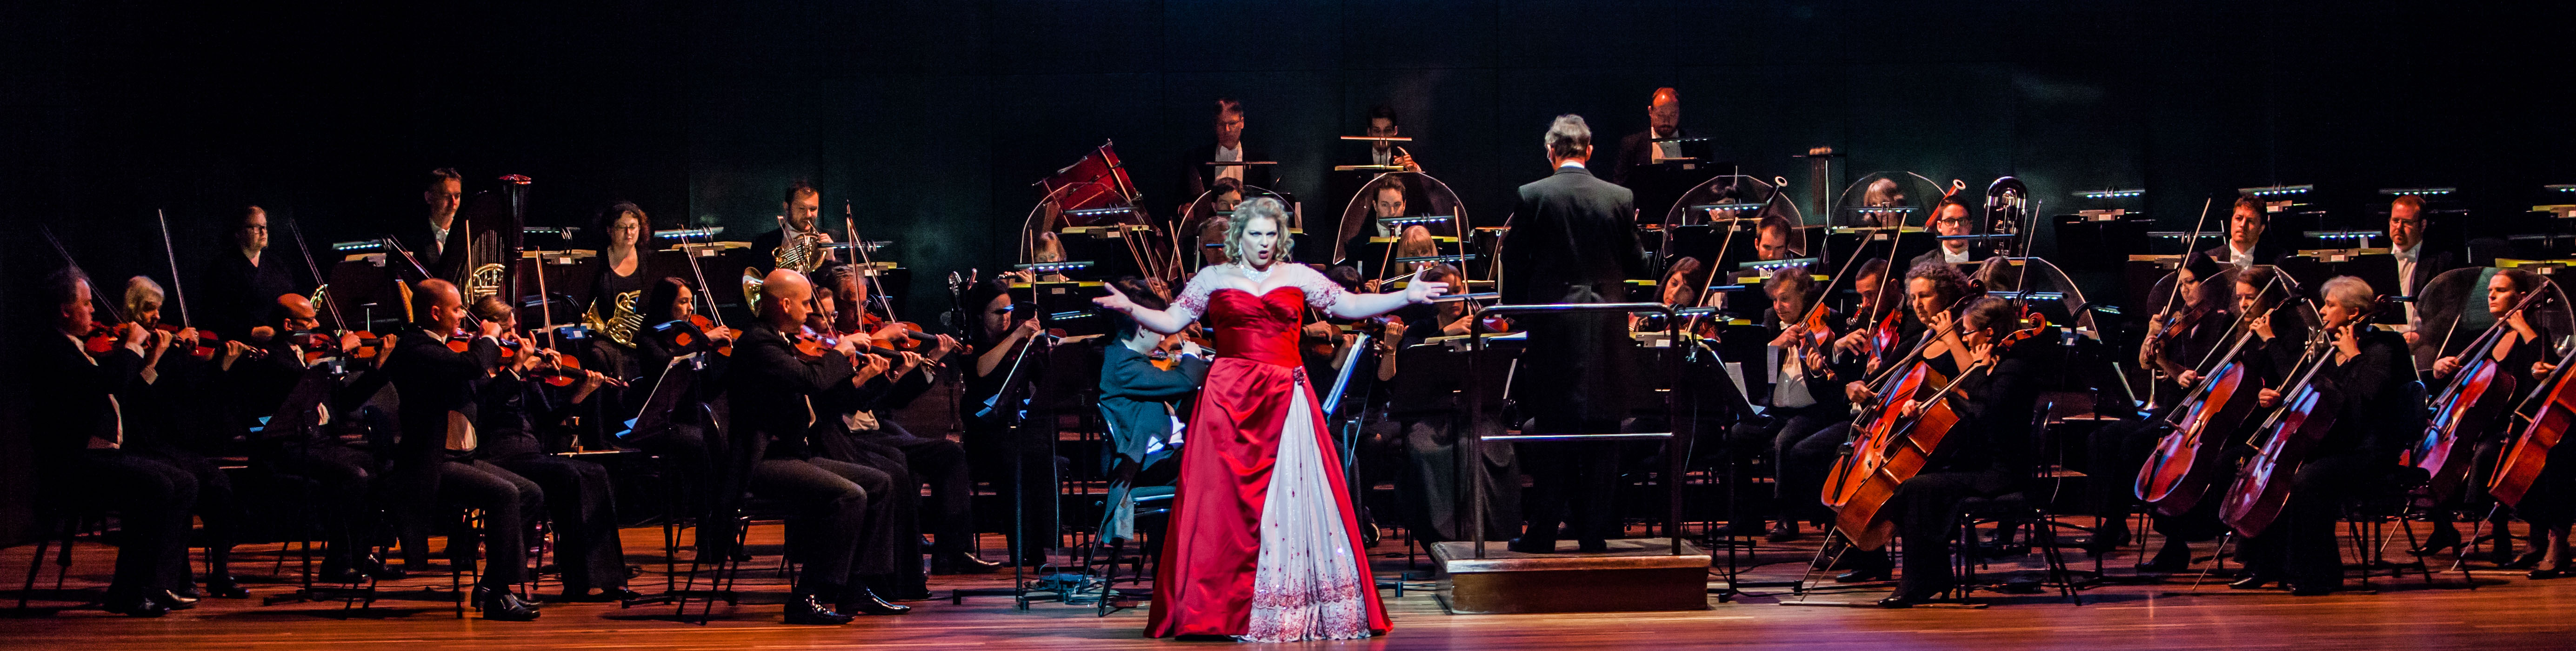 Opera Australia Season Launch 2015 with Orchestra Victoria